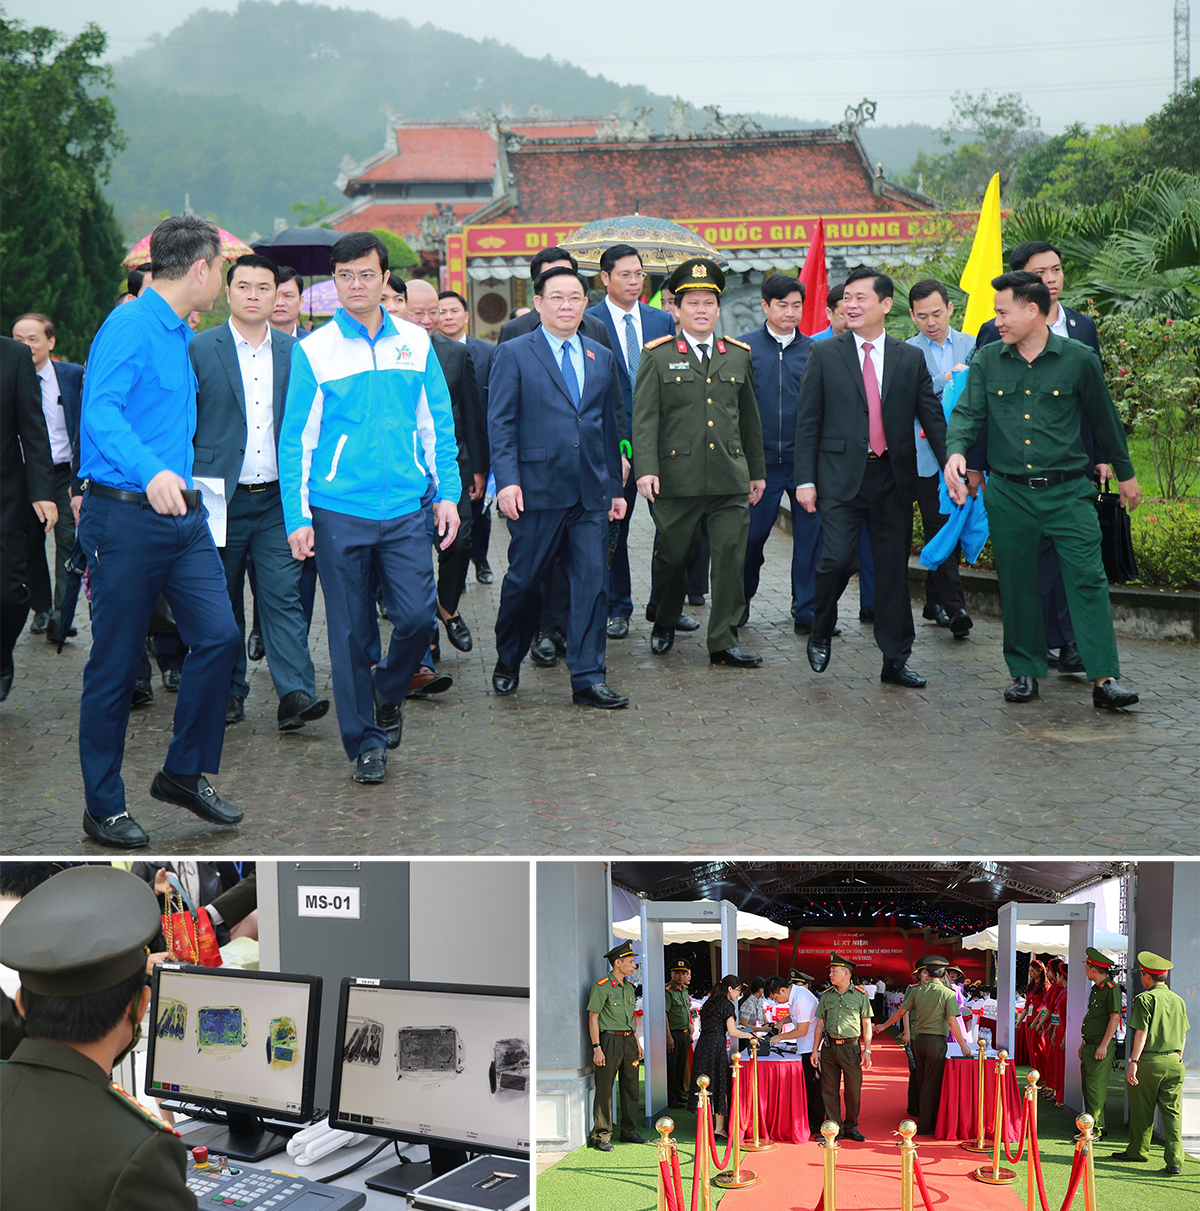 Công an tỉnh Nghệ An bảo đảm an toàn tuyệt đối các hoạt động của lãnh đạo Đảng, Nhà nước, các sự kiện chính trị trên địa bàn Nghệ An.